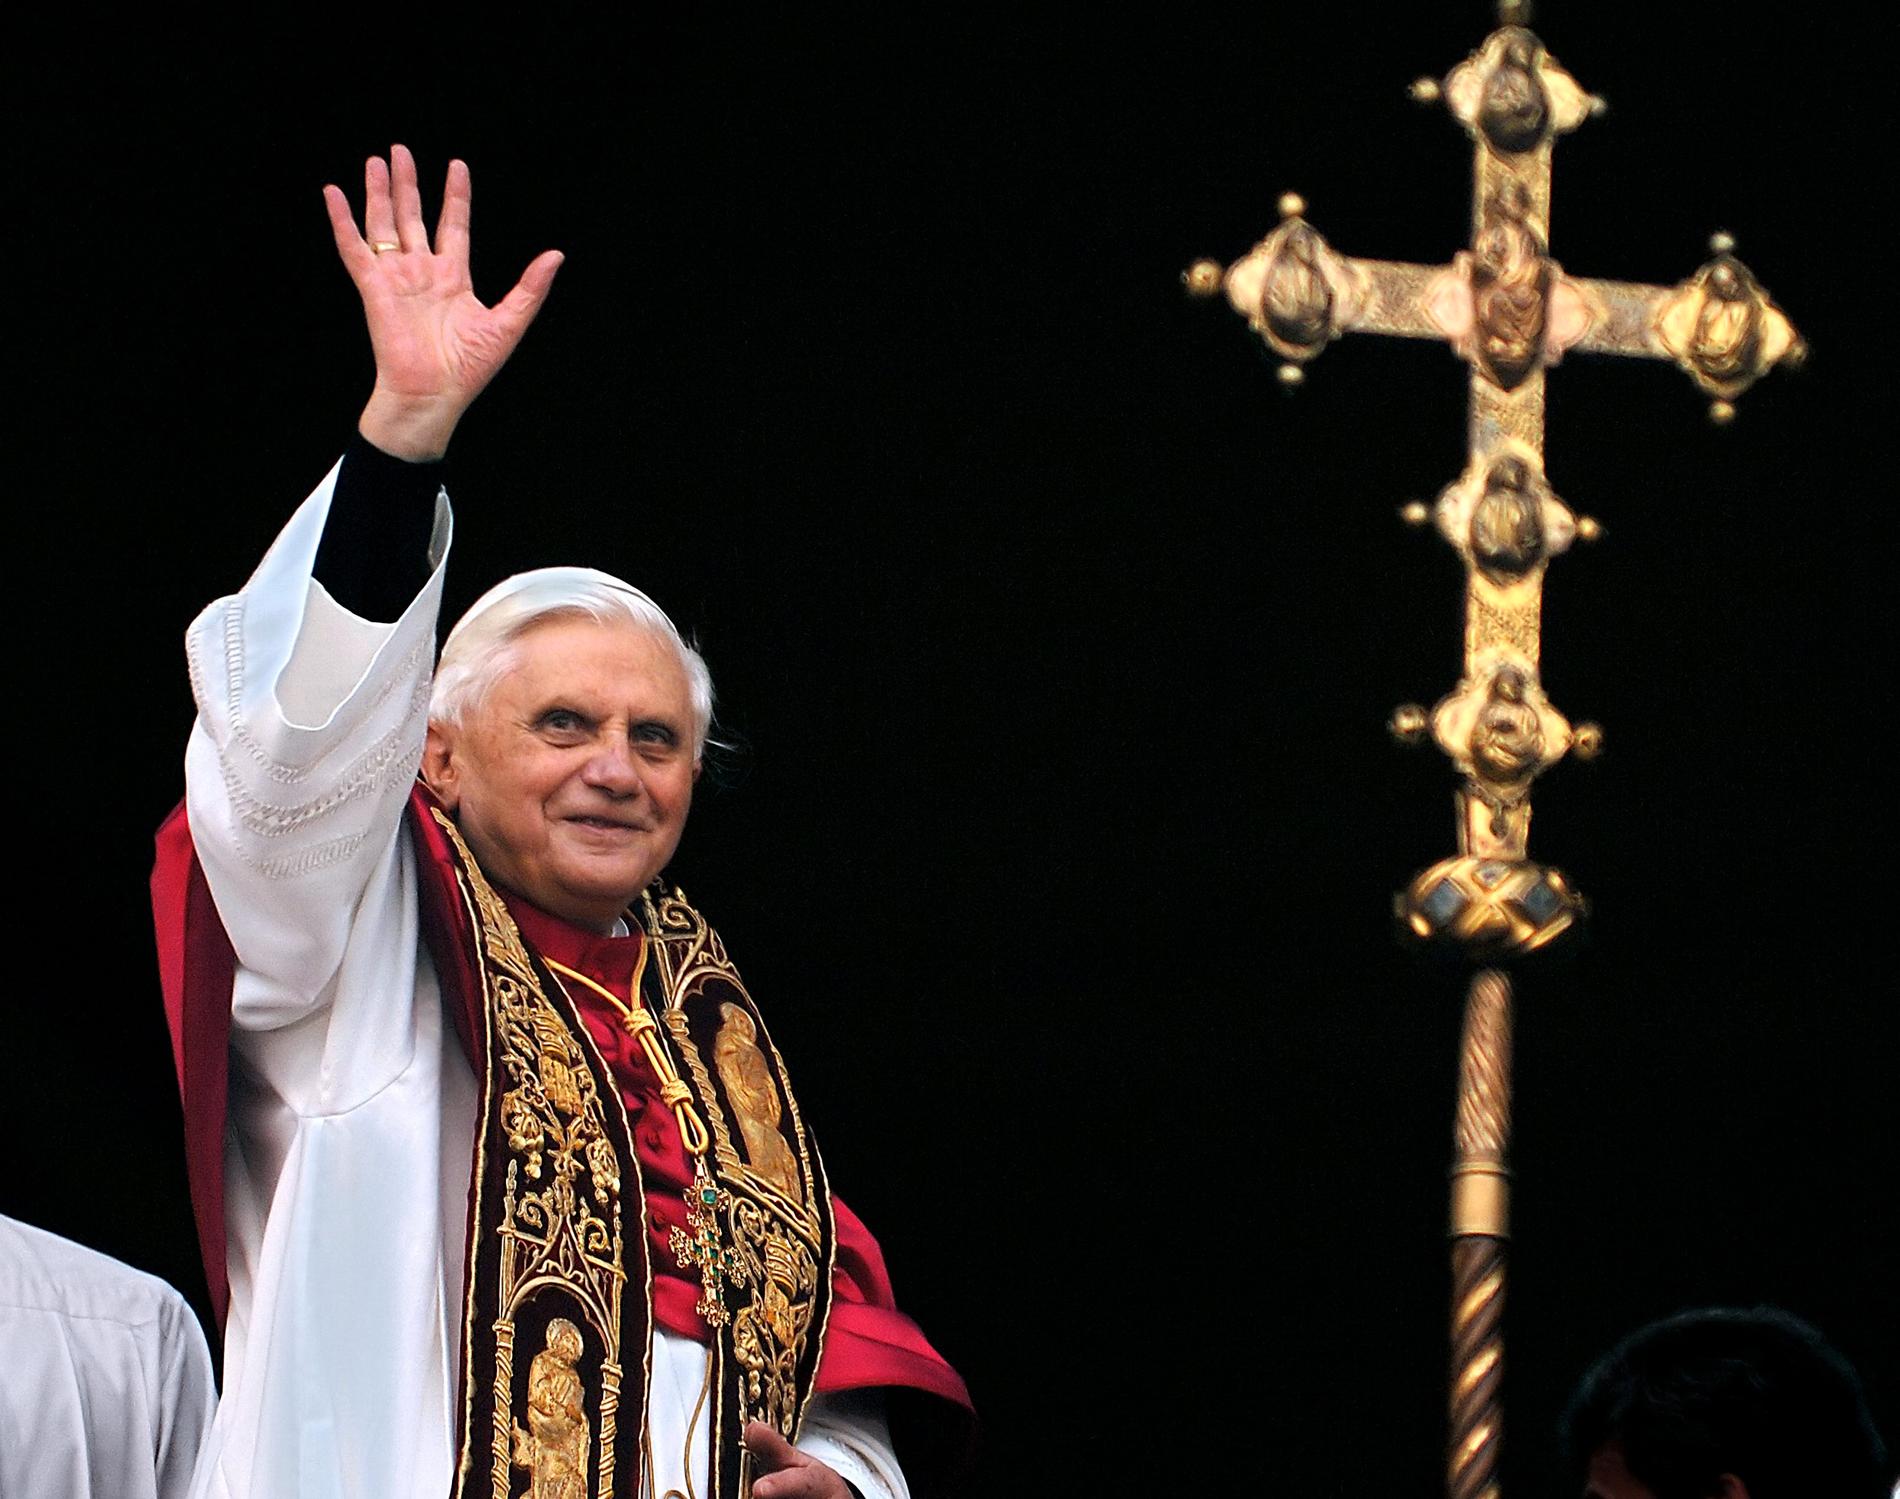 Dåvarande påve Benedictus XVI hälsar folksamling i Vatikanen. Bilden är från 2005.